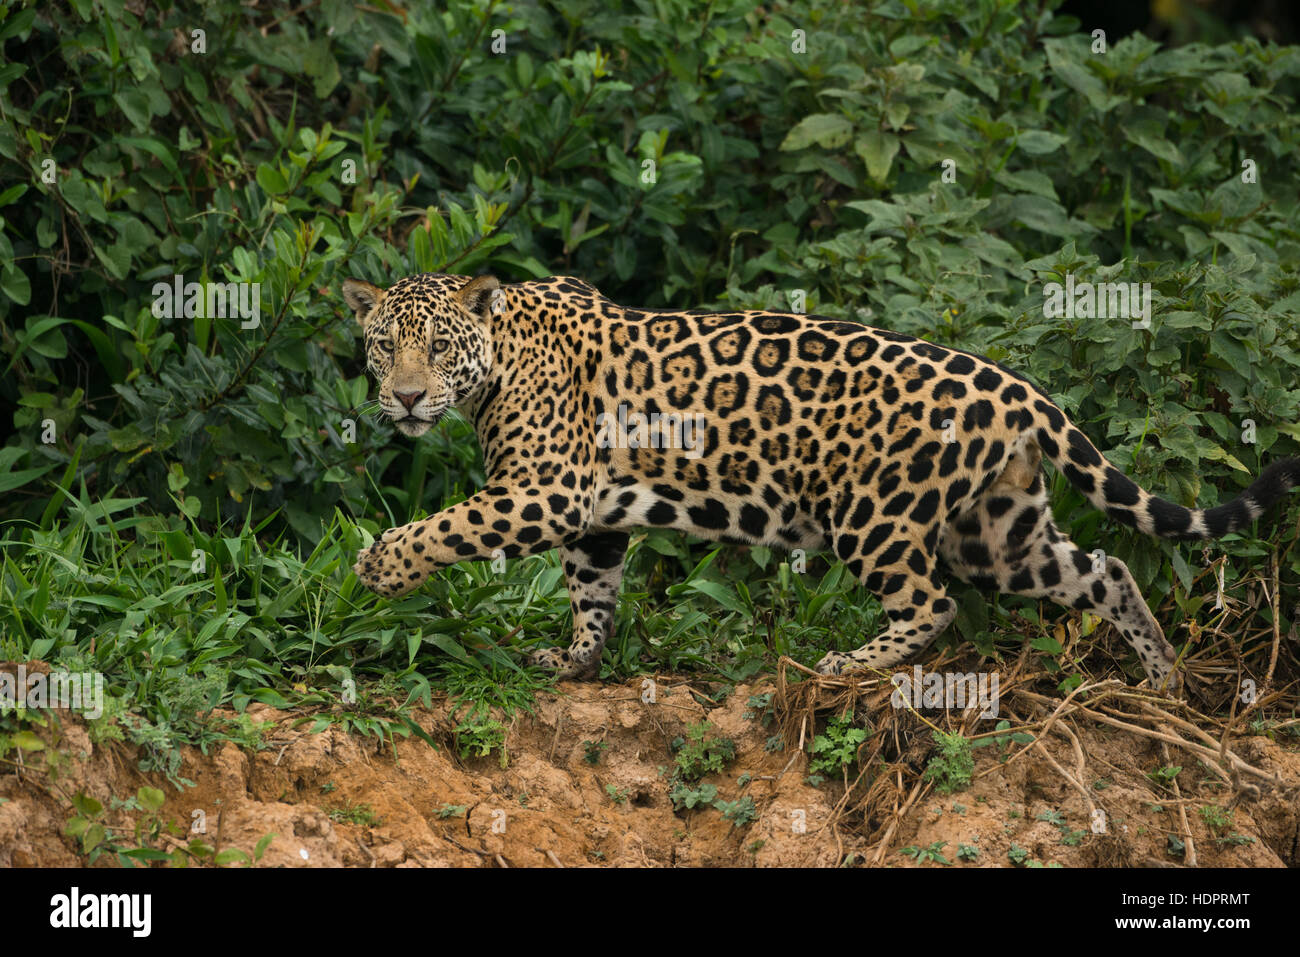 A Jaguar from North Pantanal Stock Photo